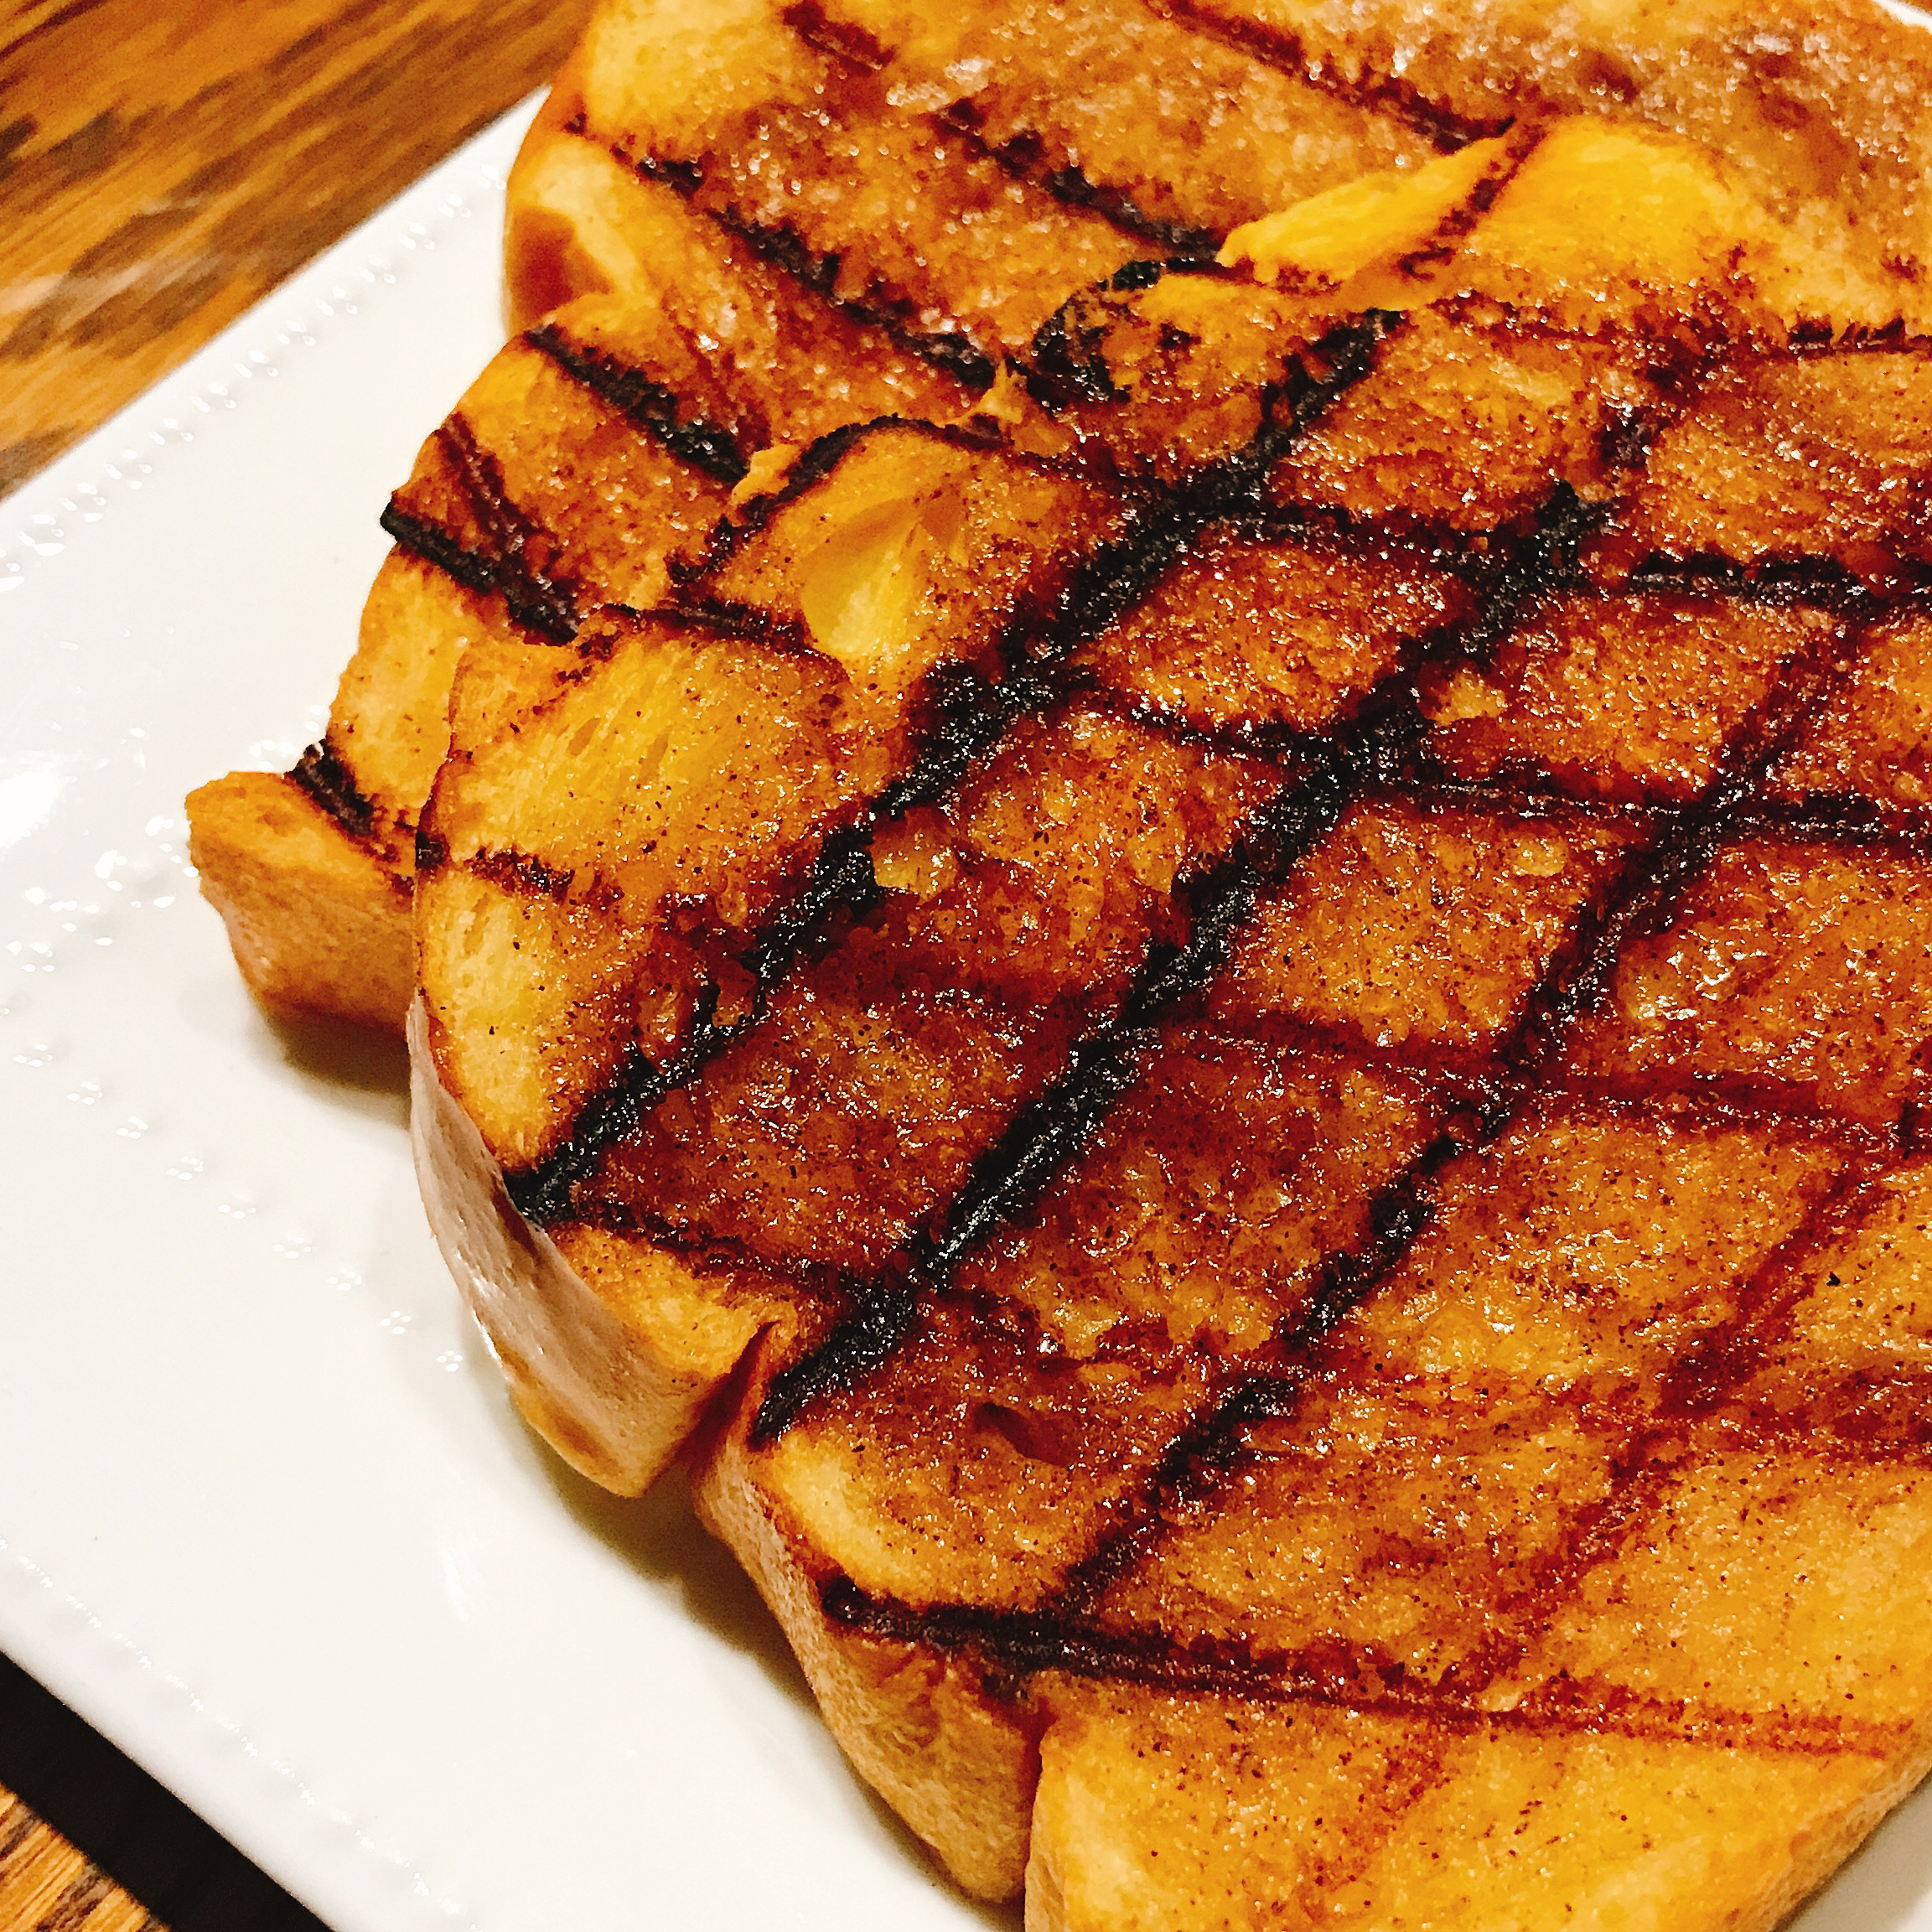 Grilled Cinnamon Toast